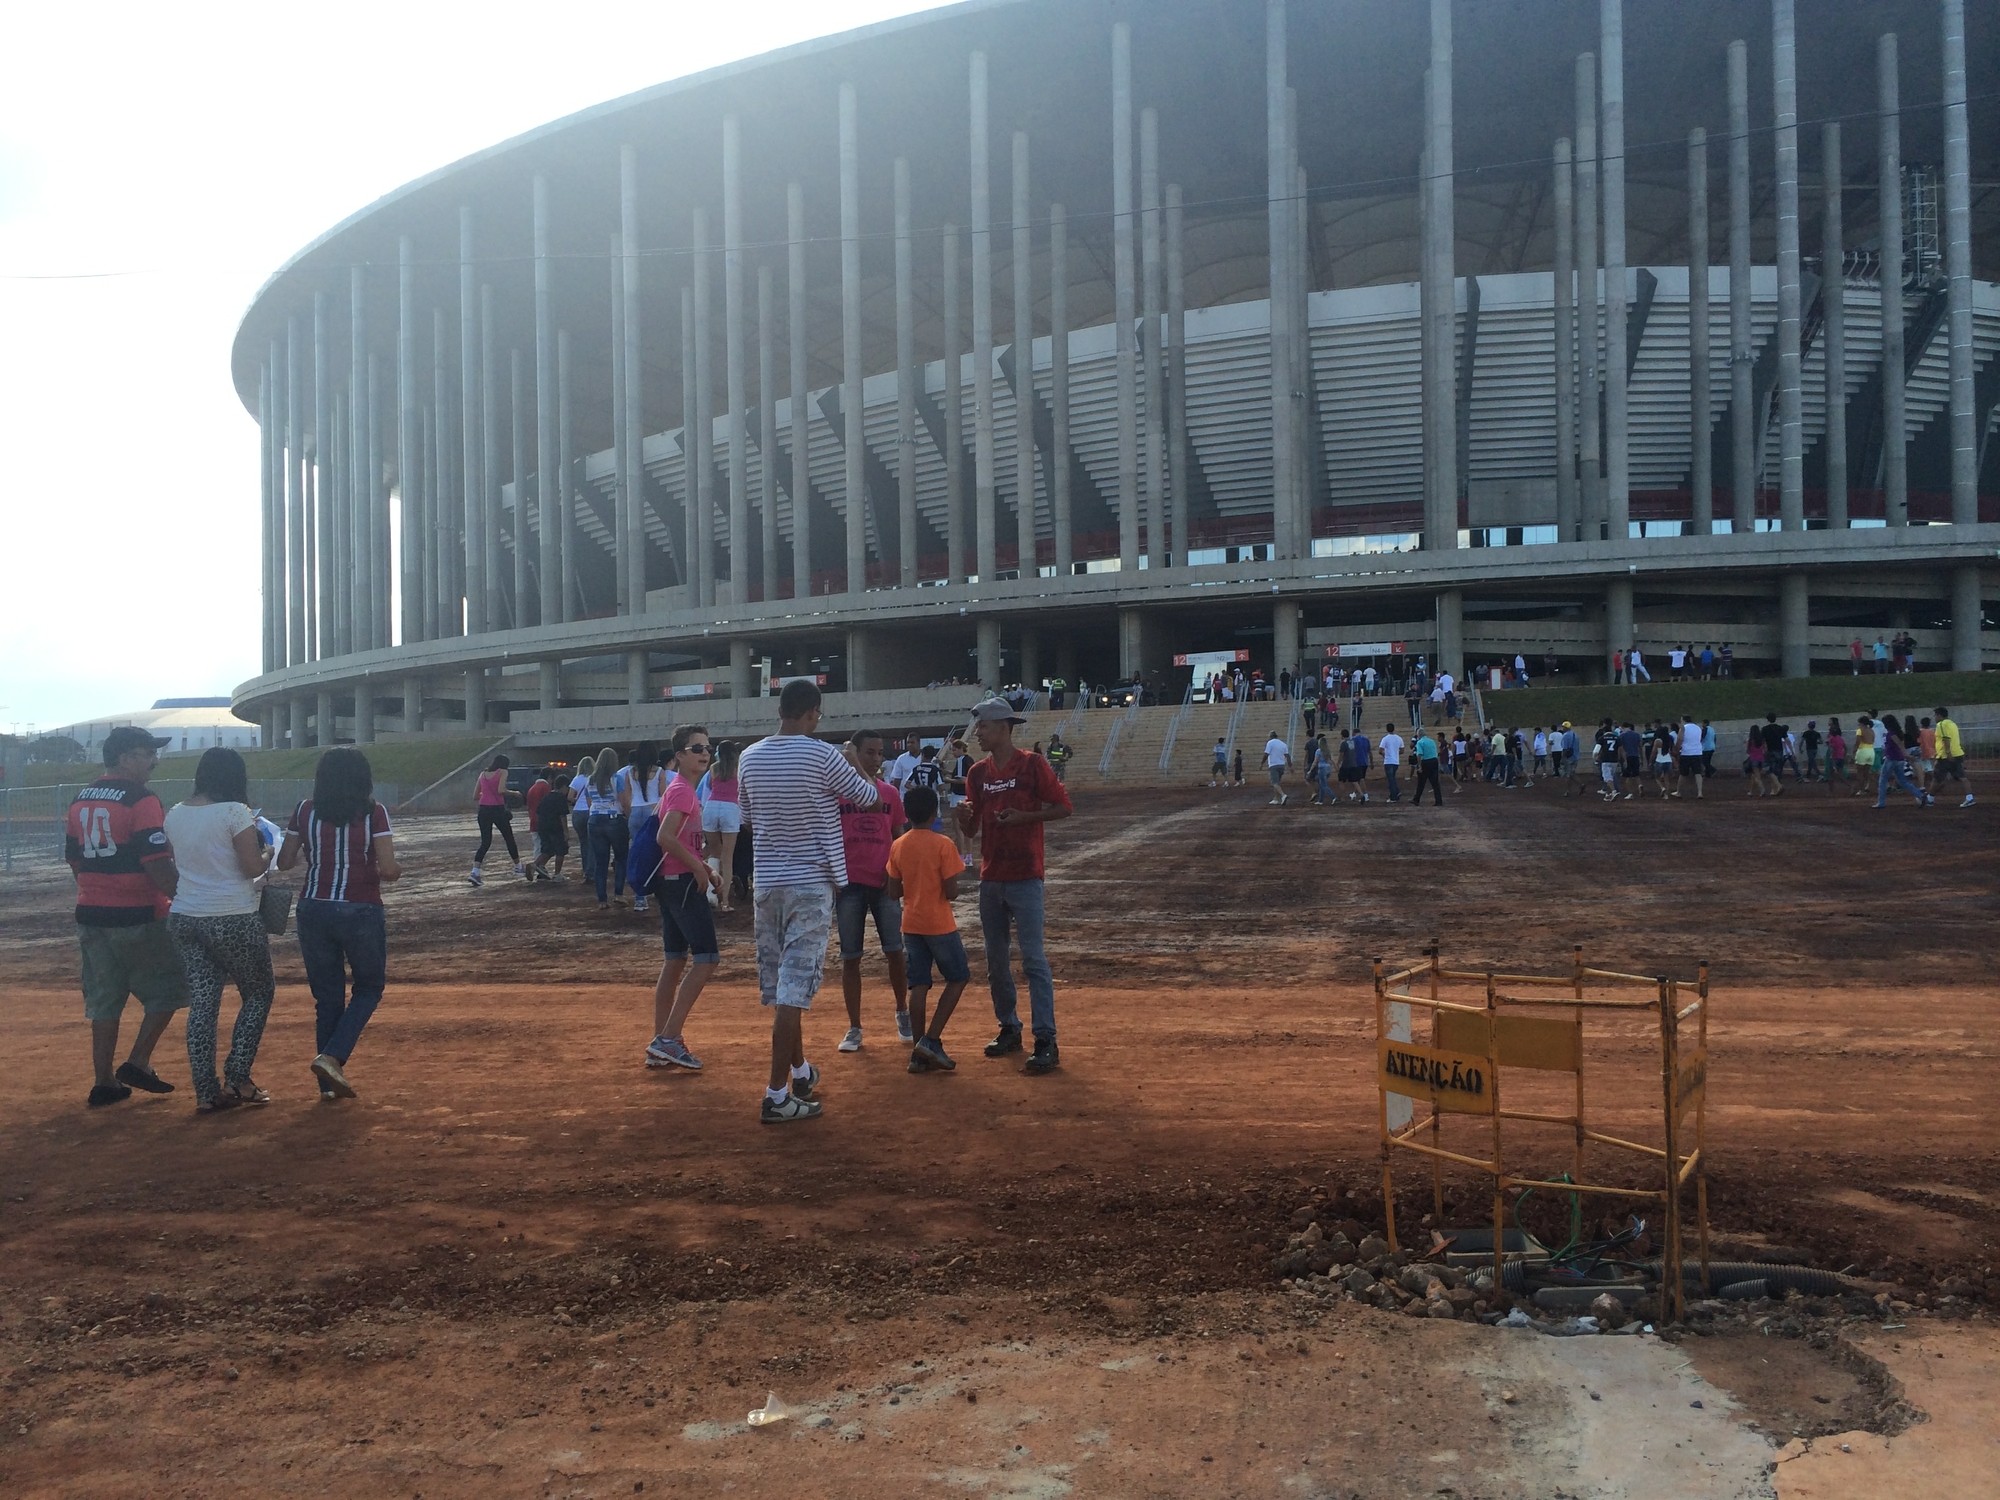 Em jogo movimentado, Corinthians e Portuguesa empatam na Arena BRB Mané  Garrincha